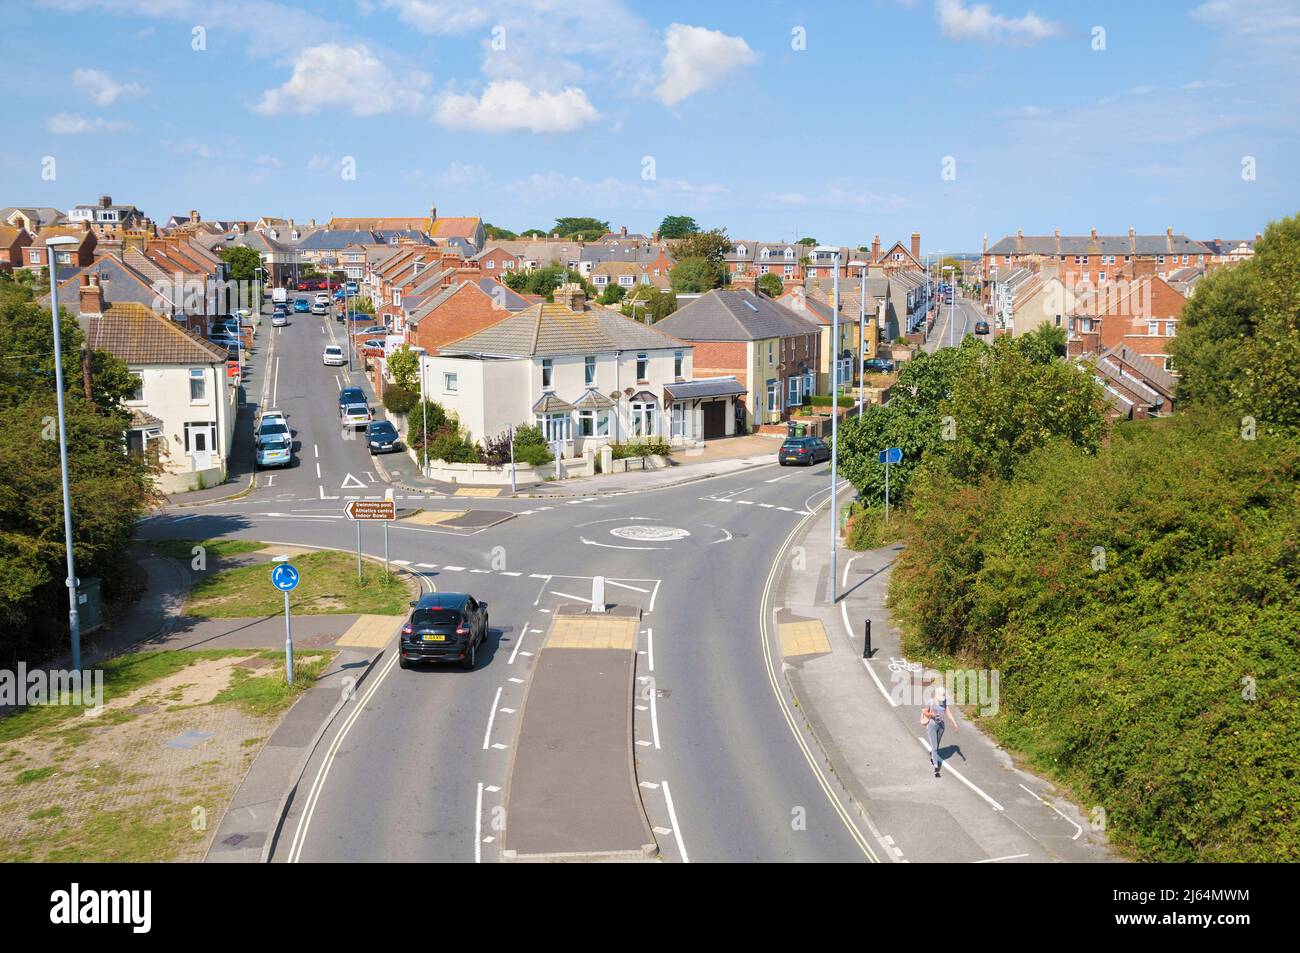 Vista elevada de calles residenciales y casas adosadas con mini-rotonda y cruce de carreteras en las afueras de Weymouth, Dorset, Inglaterra, Reino Unido Foto de stock